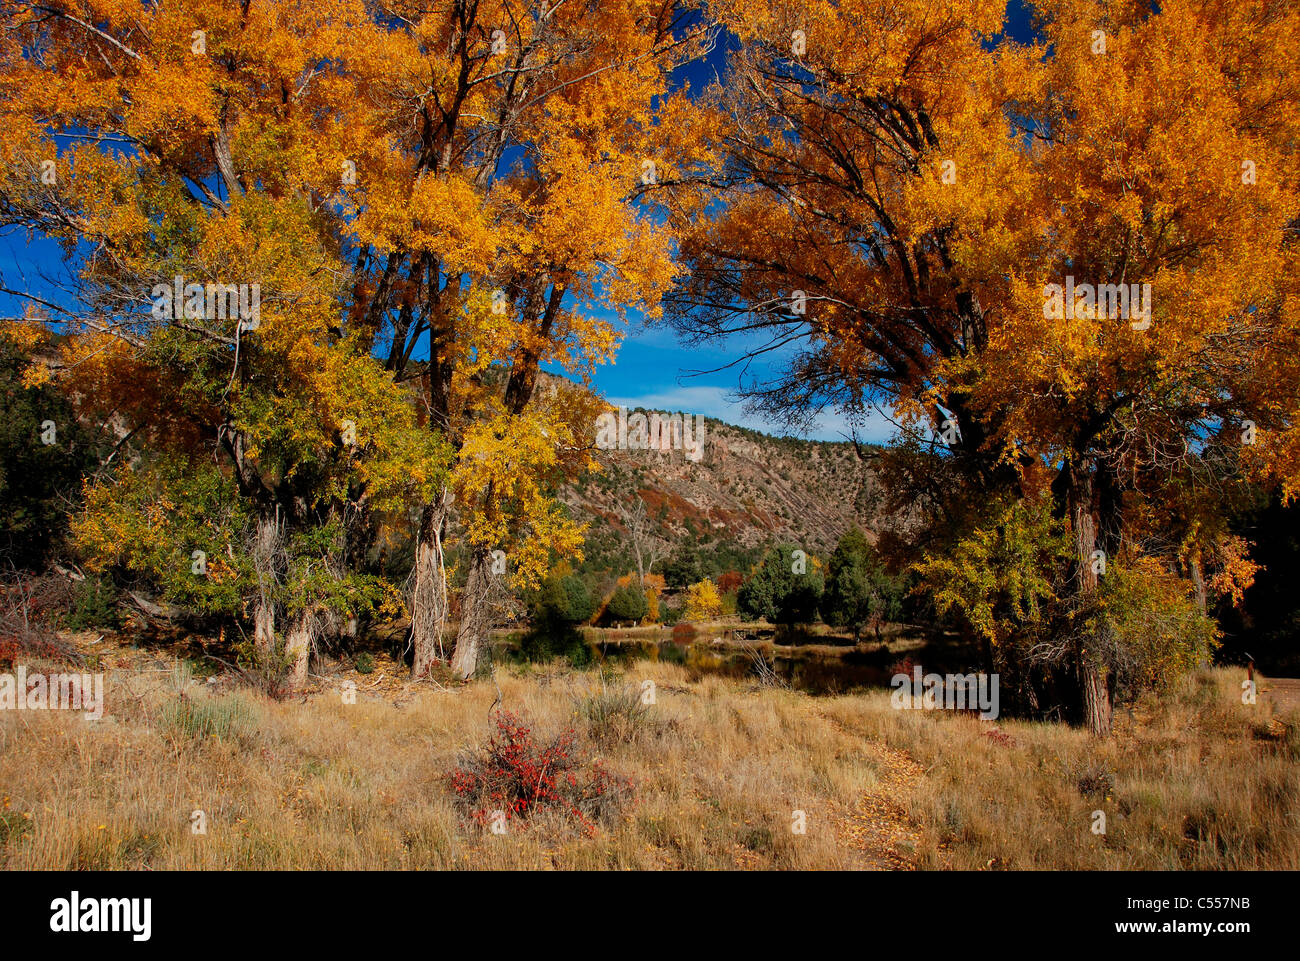 USA, Colorado, Ridgway, autumn trees Stock Photo